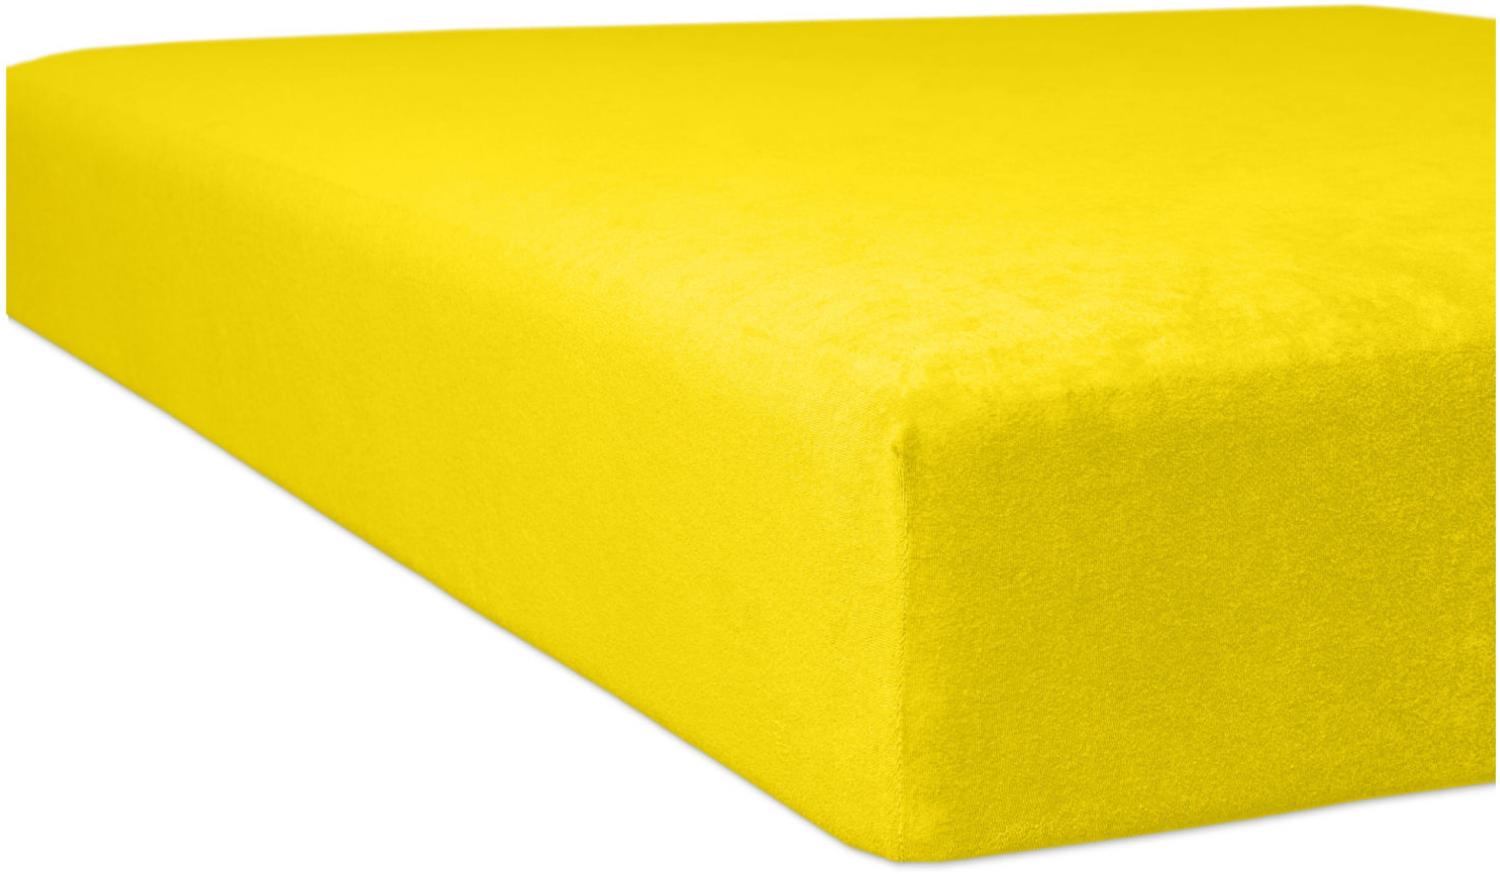 Kneer Flausch-Frottee Spannbetttuch für Matratzen bis 22 cm Höhe Qualität 10 Farbe mais 120-130x200 cm Bild 1